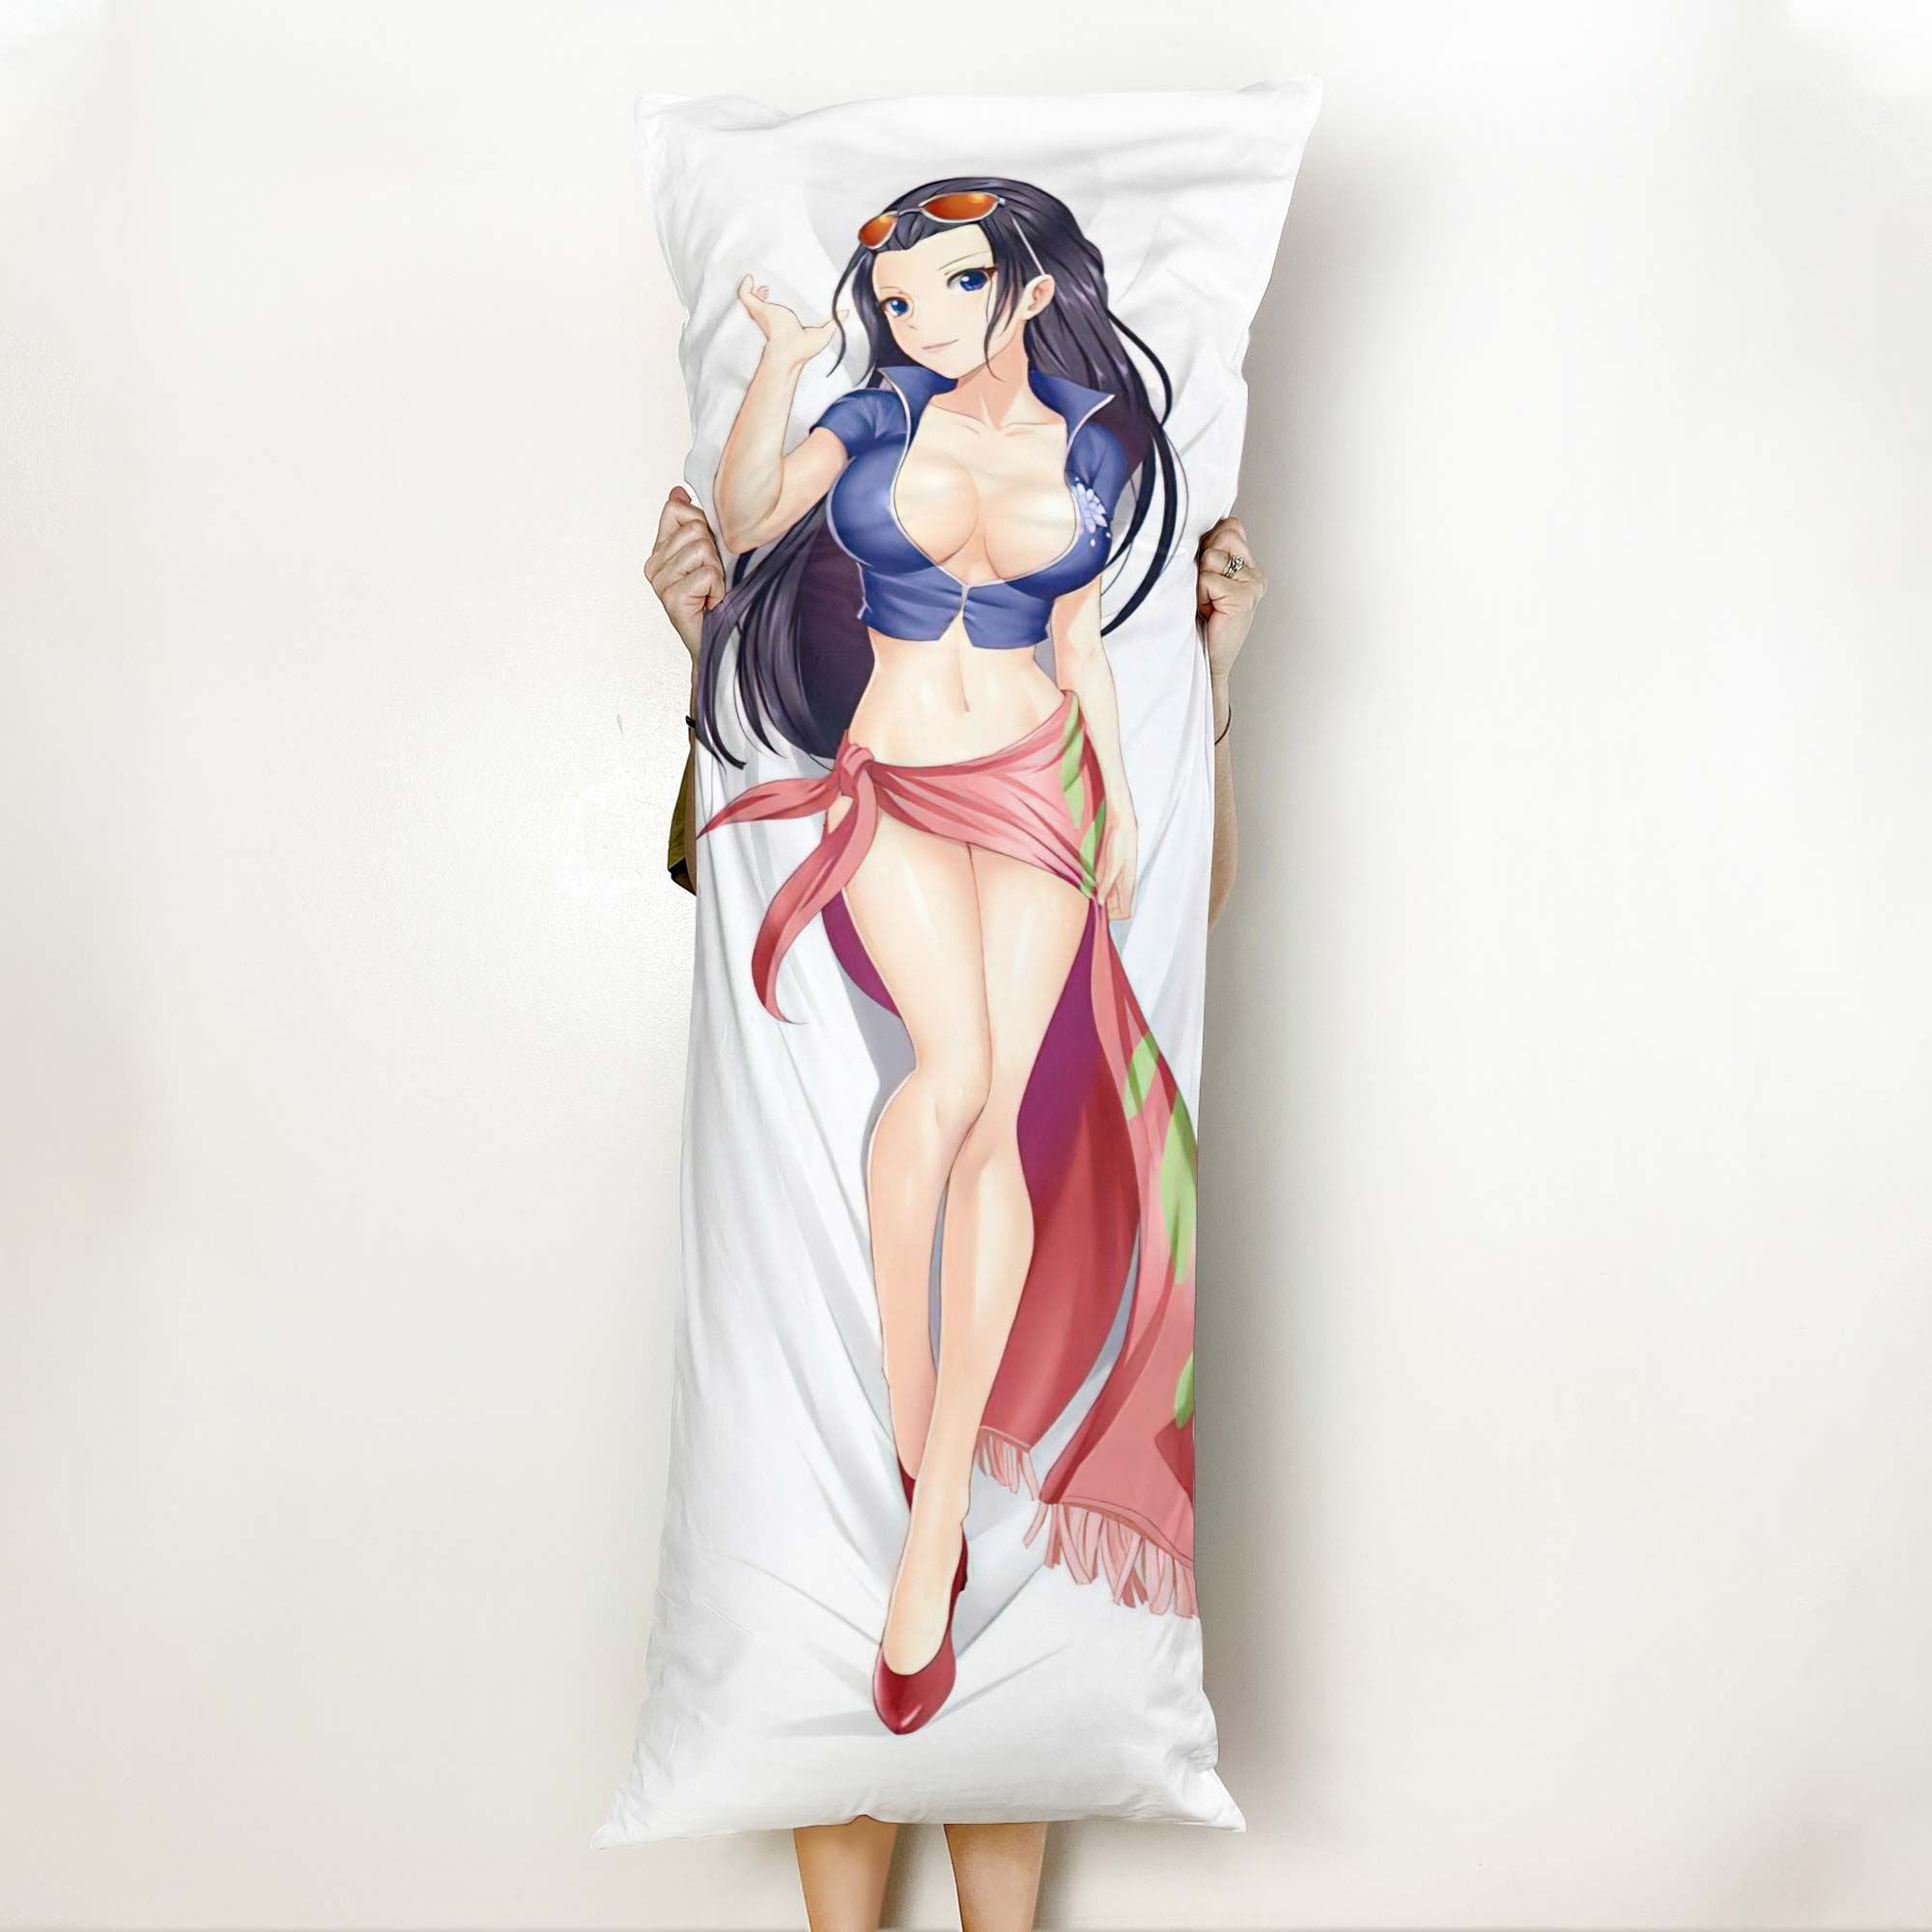 Nico Robin Body Pillow Cover Anime Gifts Idea For Otaku Girl Official Merch GO0110